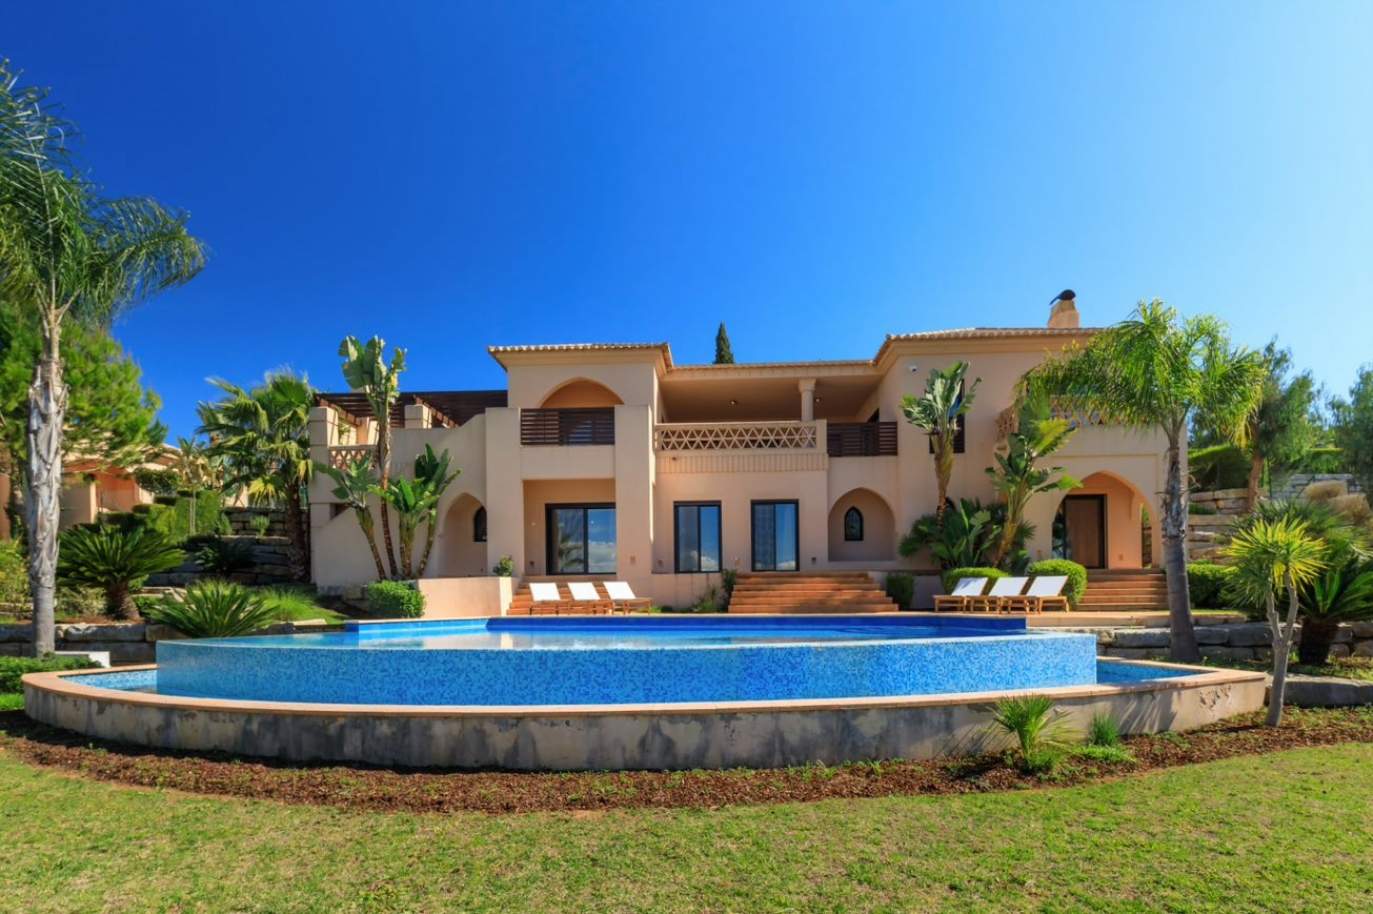 Venda de moradia, com 5 quartos, terraço e jardim, Silves, Algarve_155399